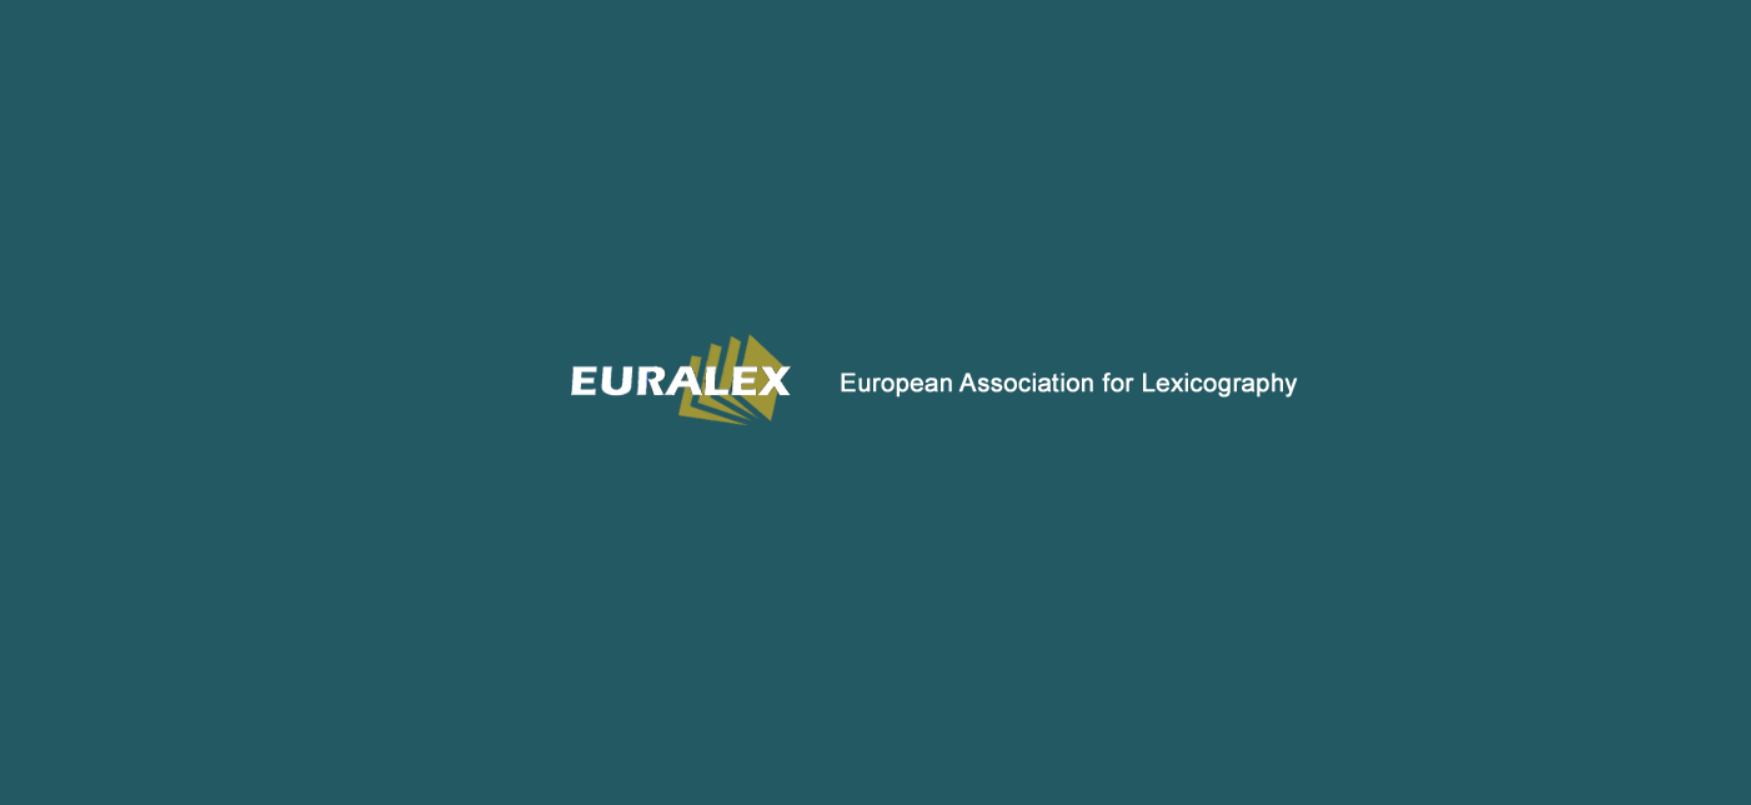 EURALEX celebra els seus 40 anys amb un cicle de conferències i entrevistes en línia